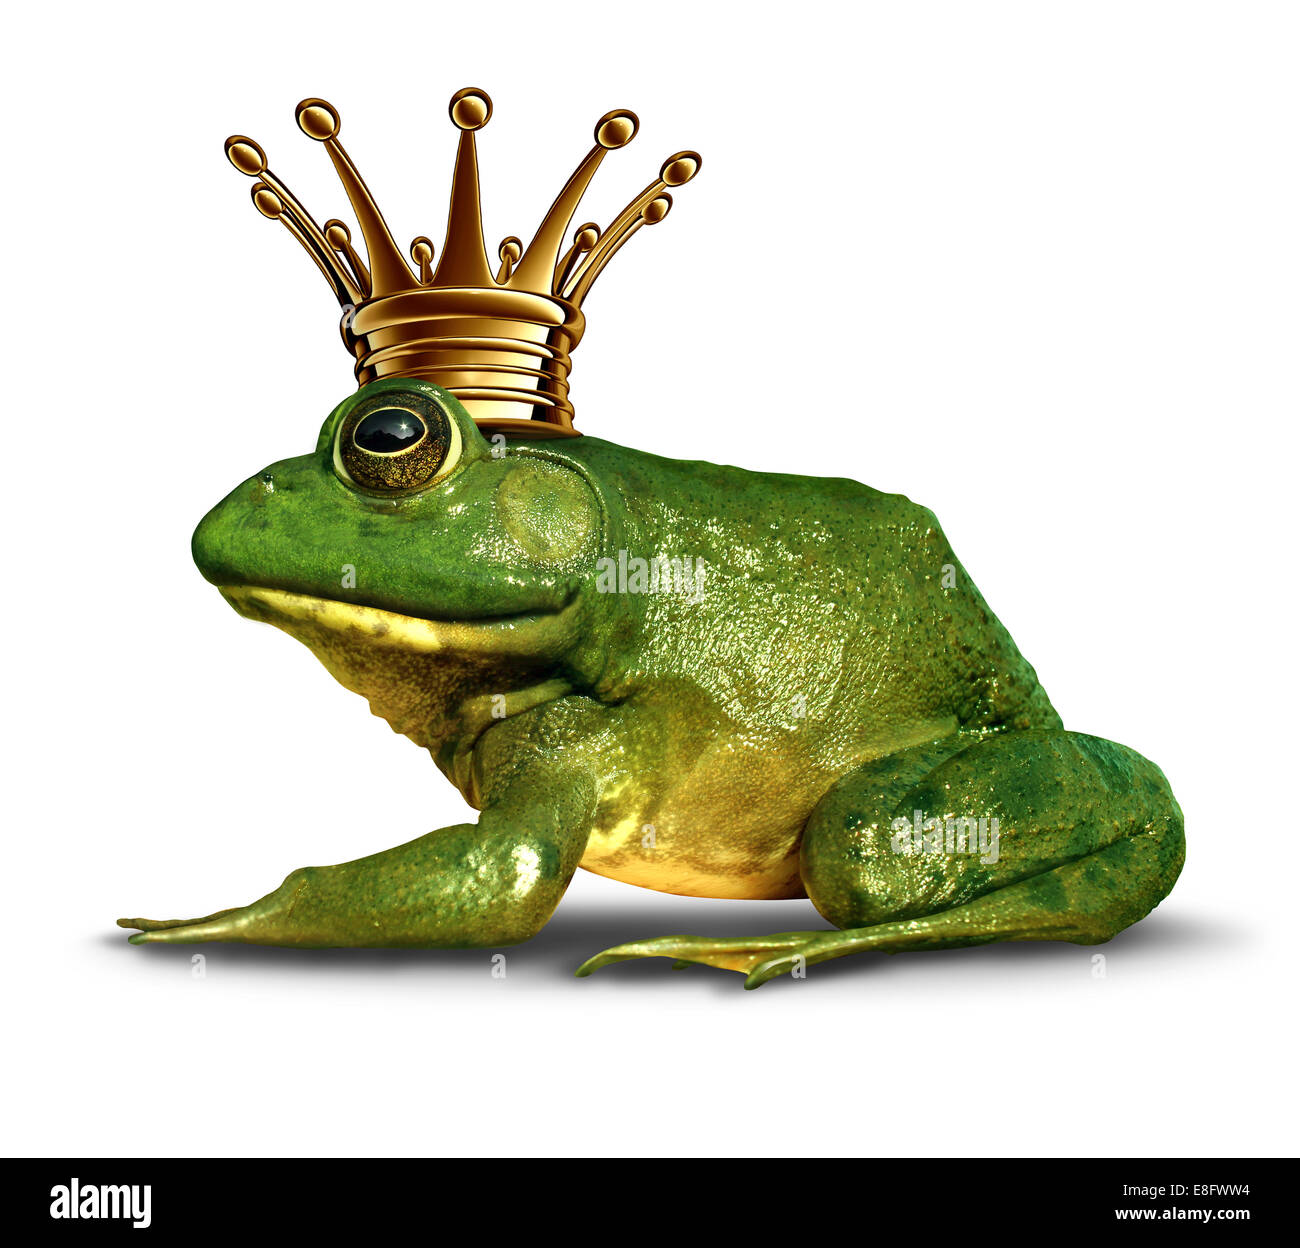 Frosch Prinz Side View-Konzept mit Goldkrone das Märchen Symbol der Veränderung und Transformation von ein Amphibium Stockfoto